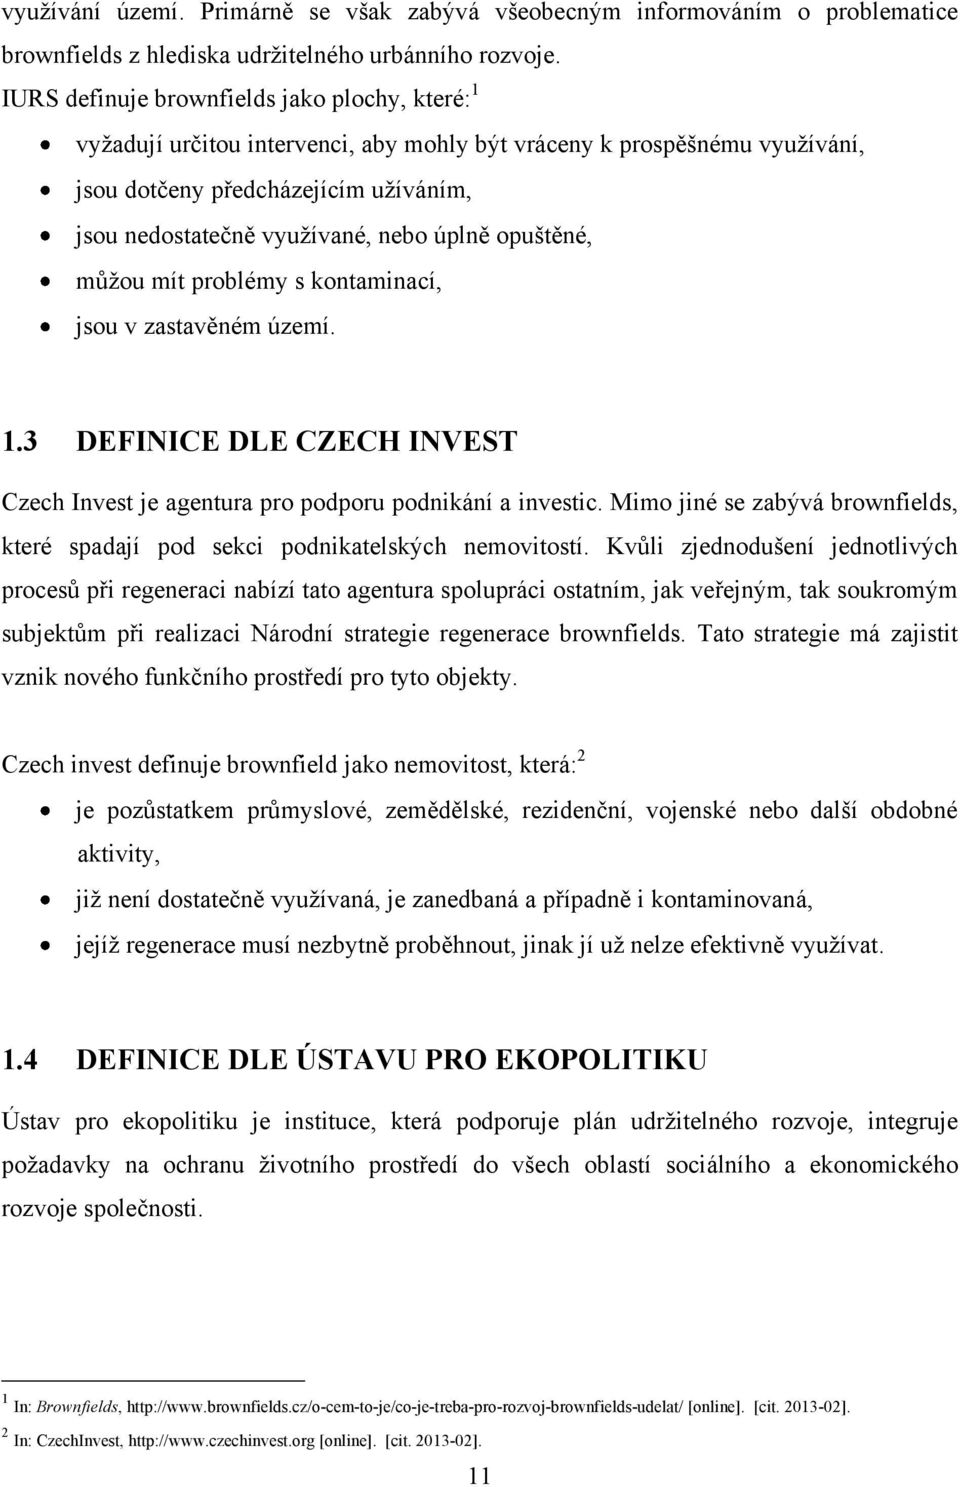 úplně opuštěné, můţou mít problémy s kontaminací, jsou v zastavěném území. 1.3 DEFINICE DLE CZECH INVEST Czech Invest je agentura pro podporu podnikání a investic.